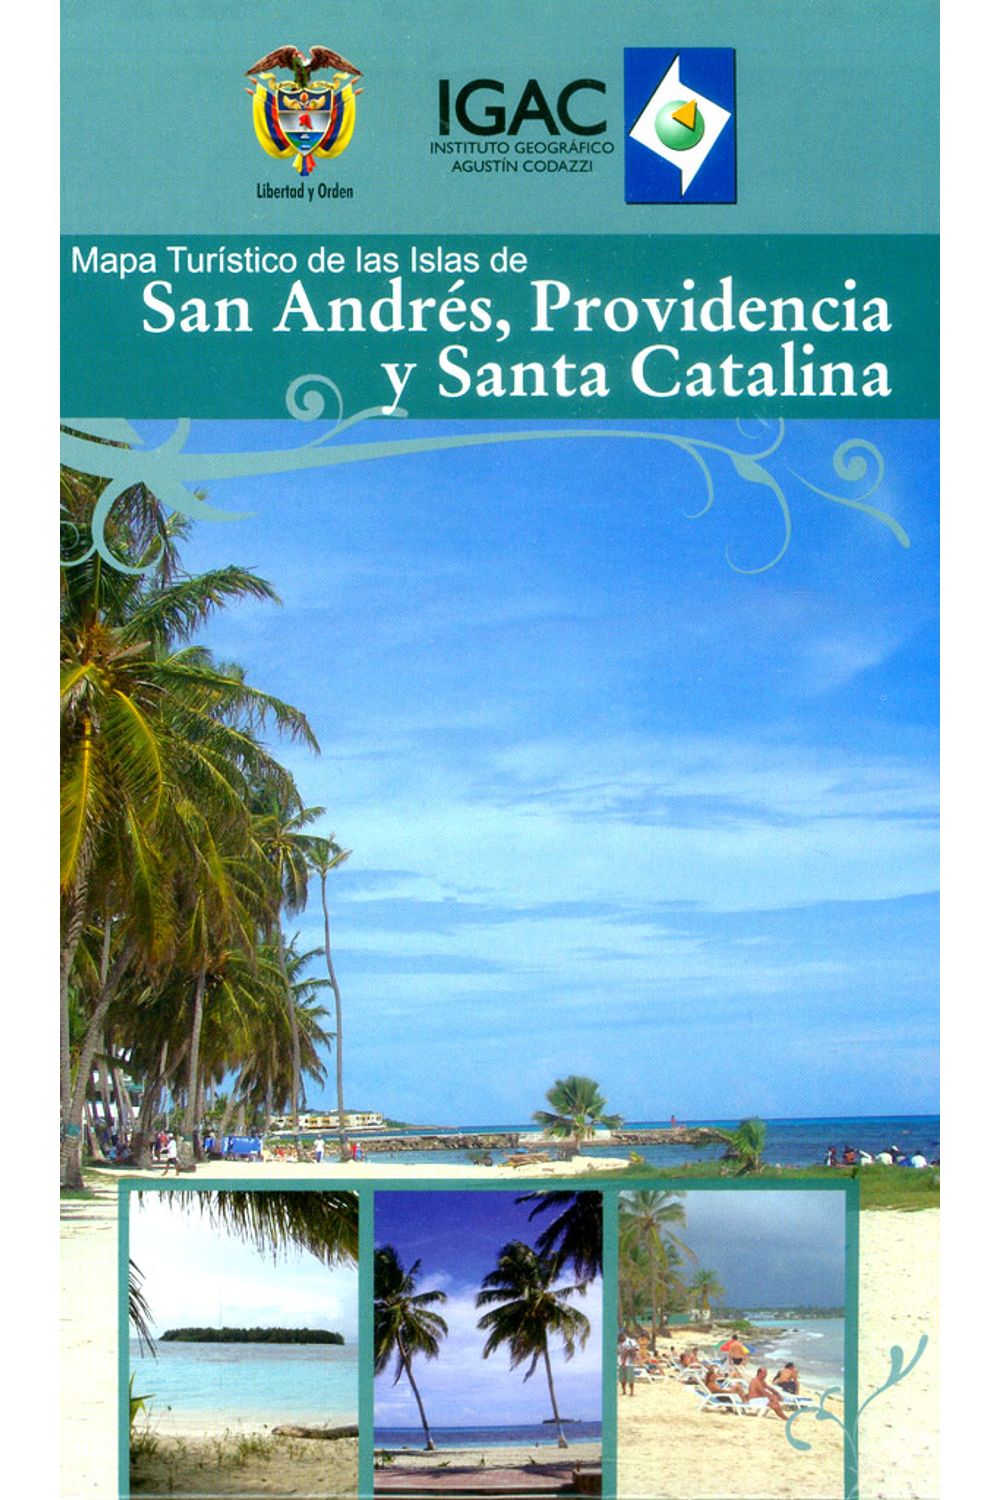 mapa-turistico-de-las-islas-de-san-andres-providencia-7703476002525-igac